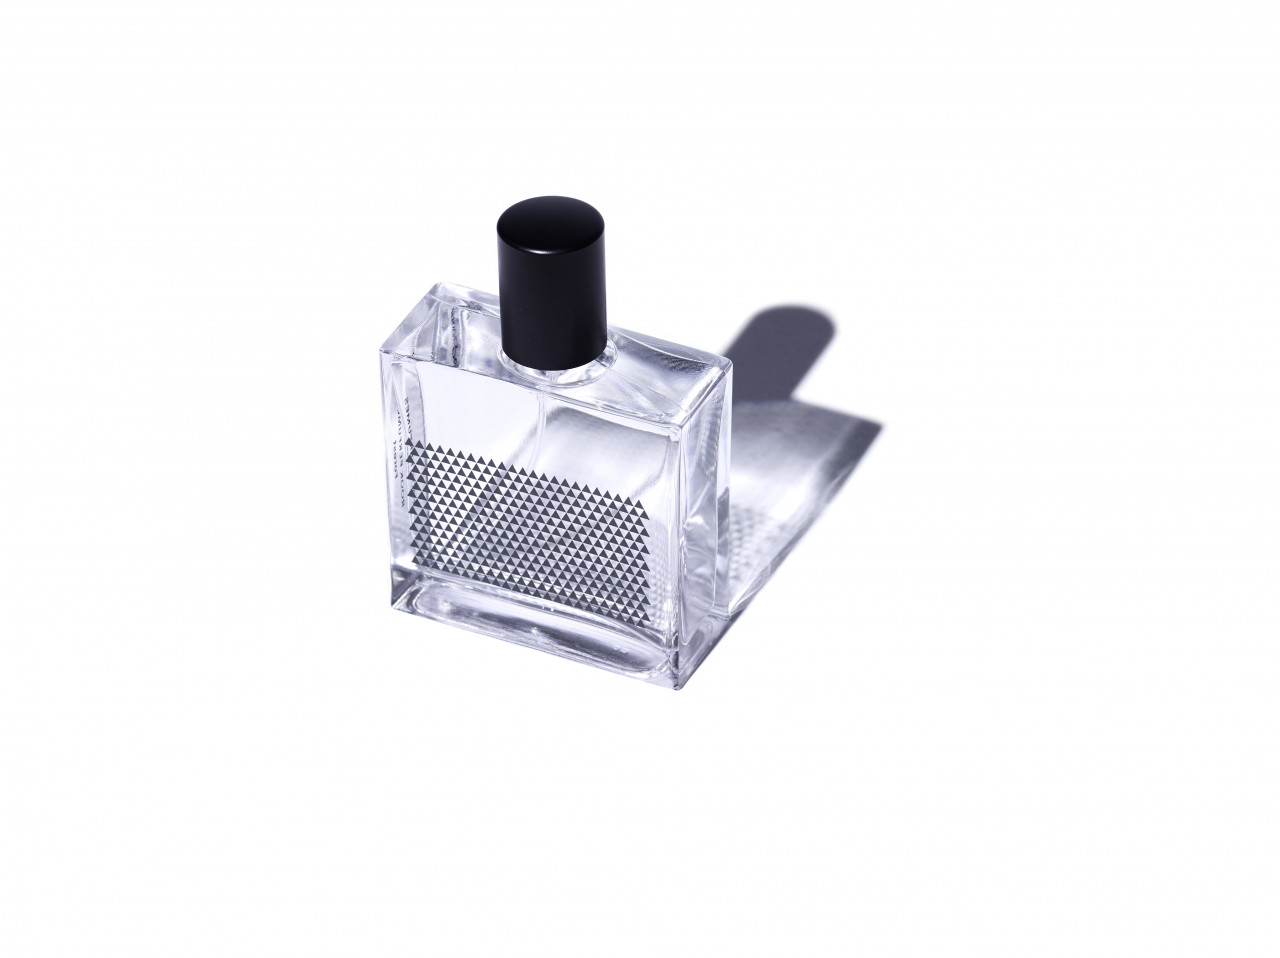 Pin on Perfumes6